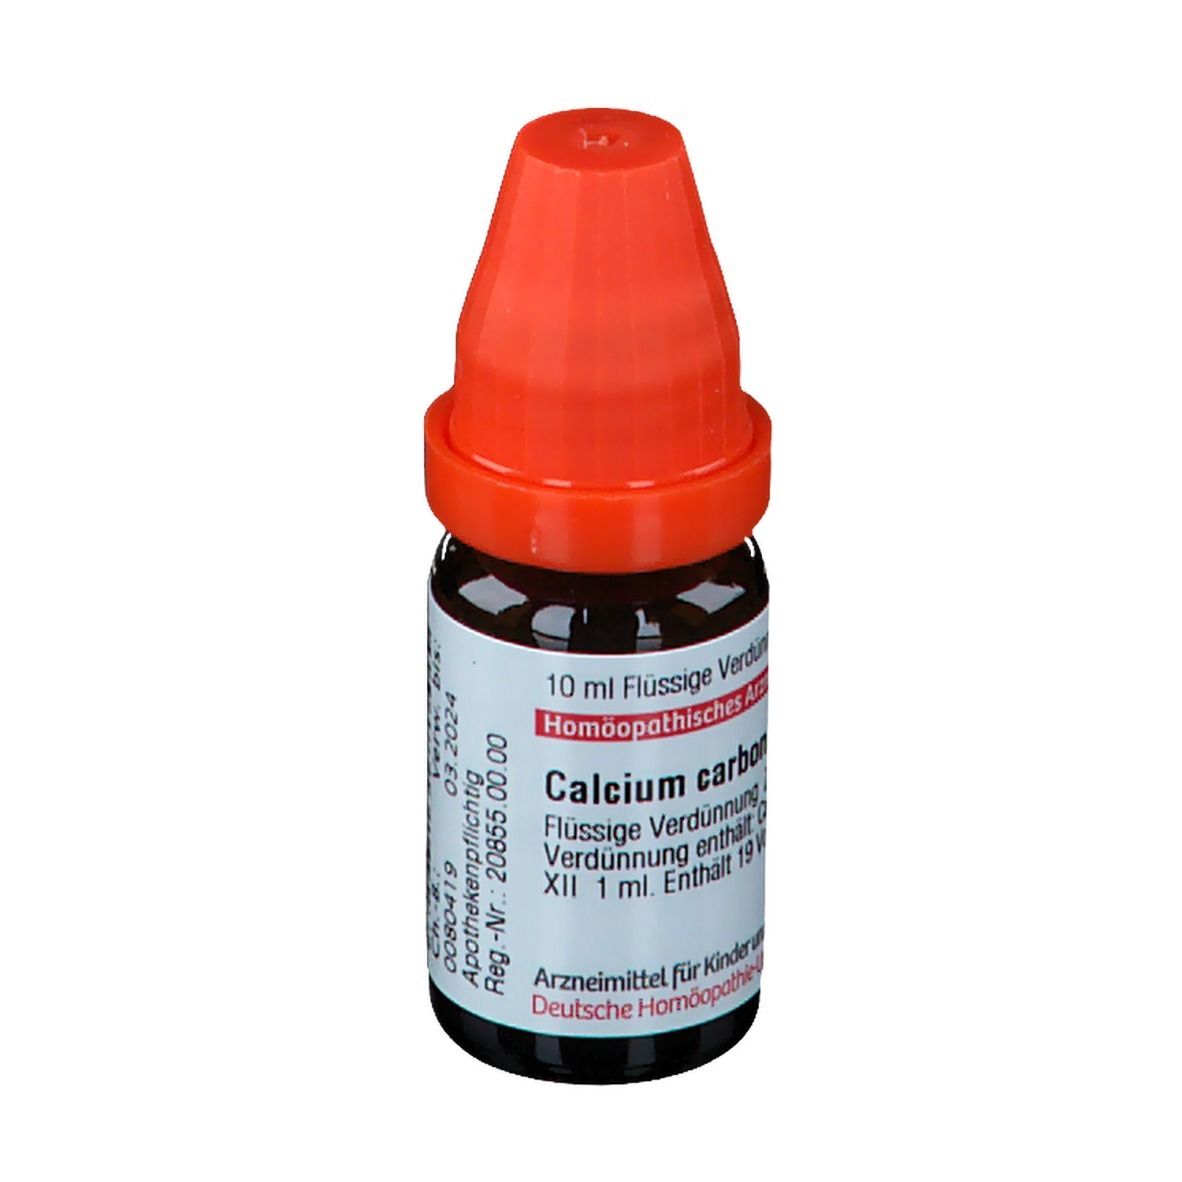 DHU Calcium Carbonicum Hahnemanni LM XII